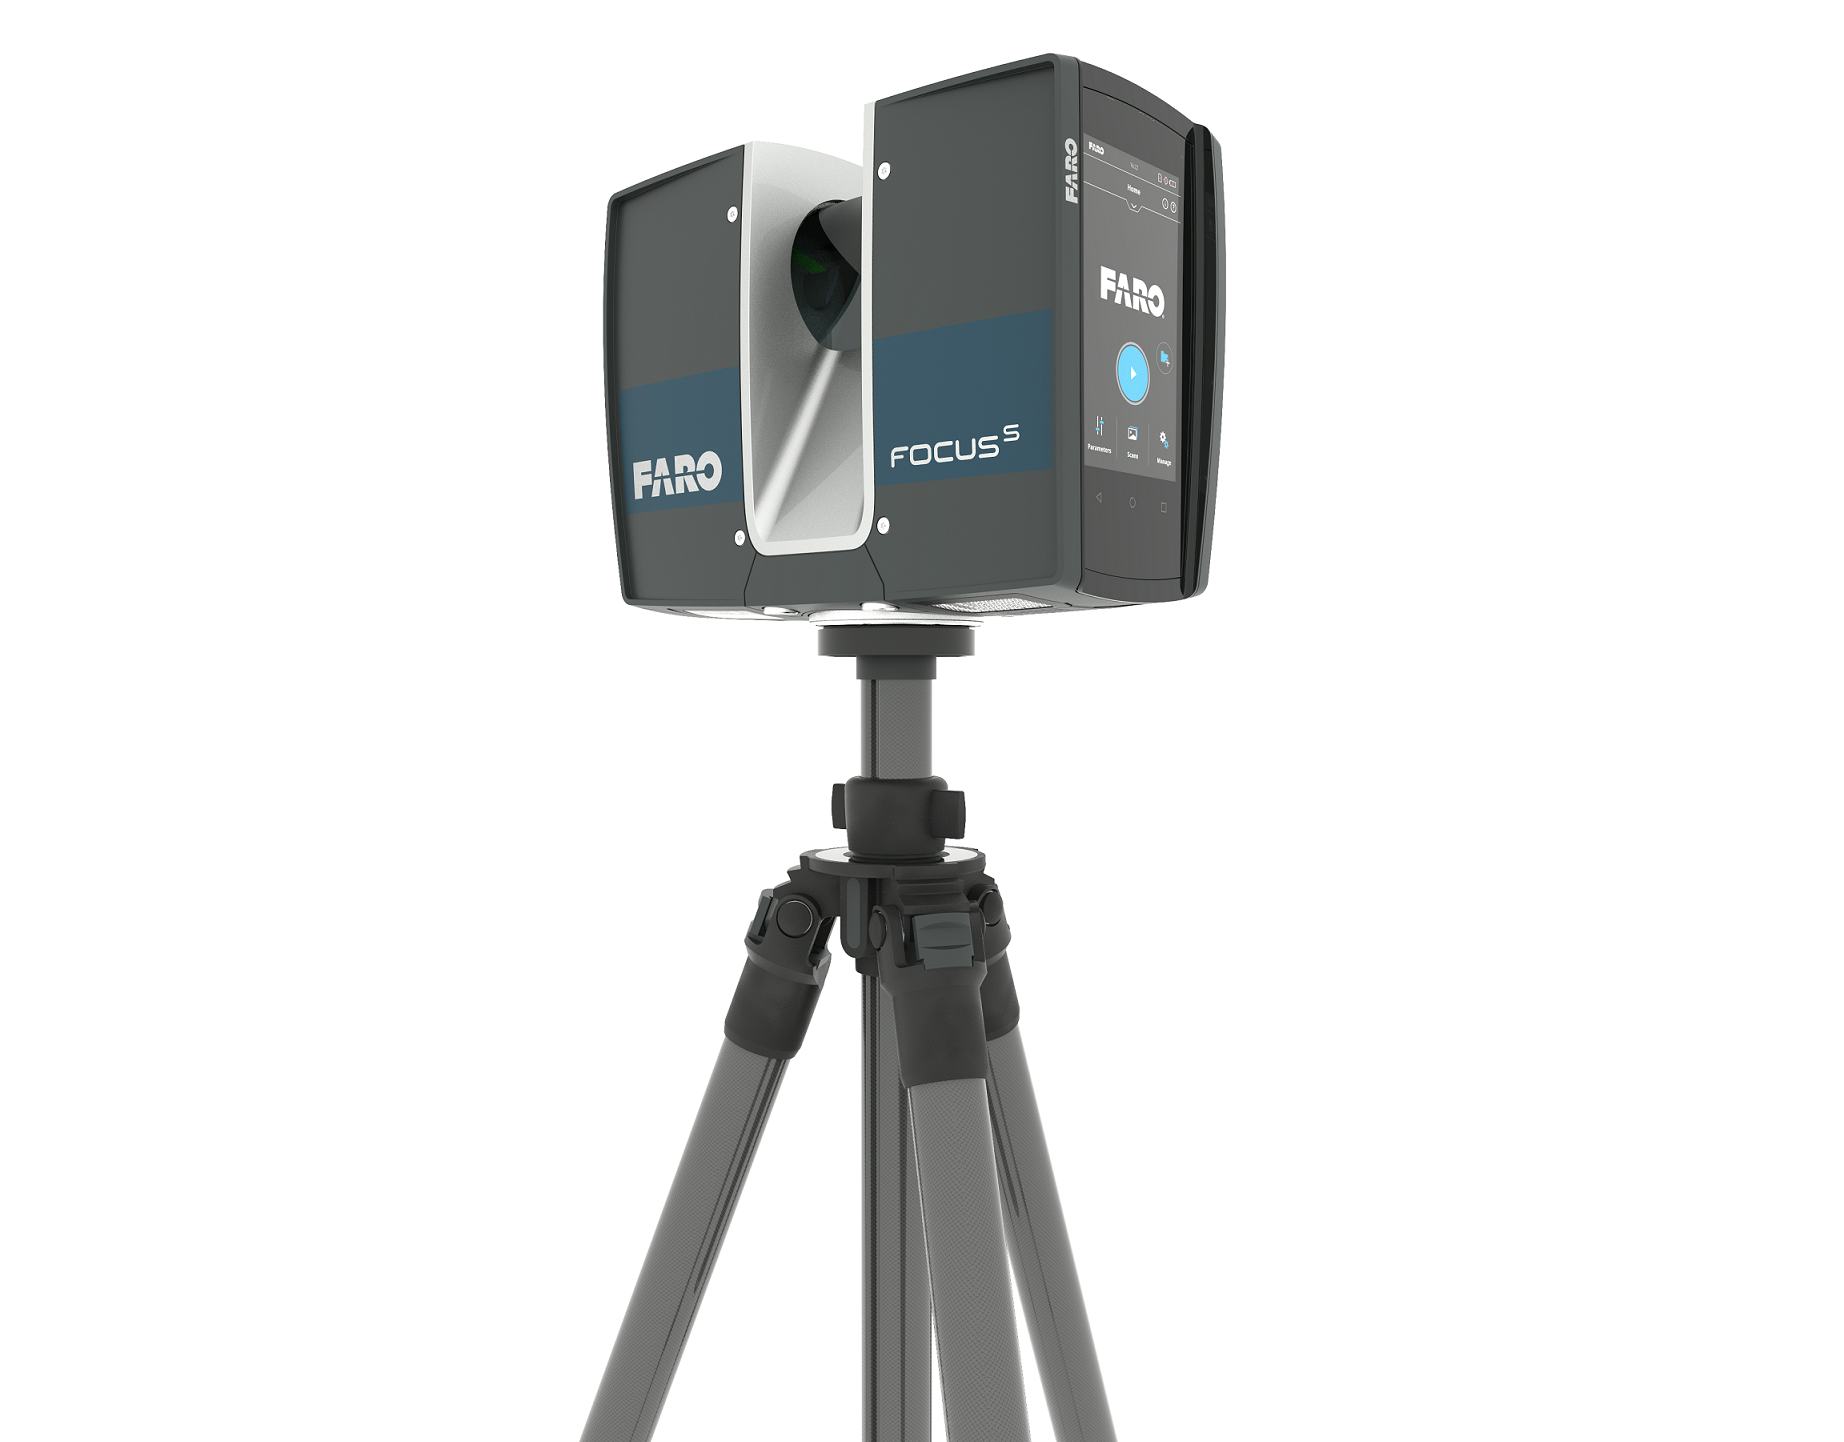 Nieuwe FARO FocusS Laser Scanner met IP54 classificering en onsite compensatie